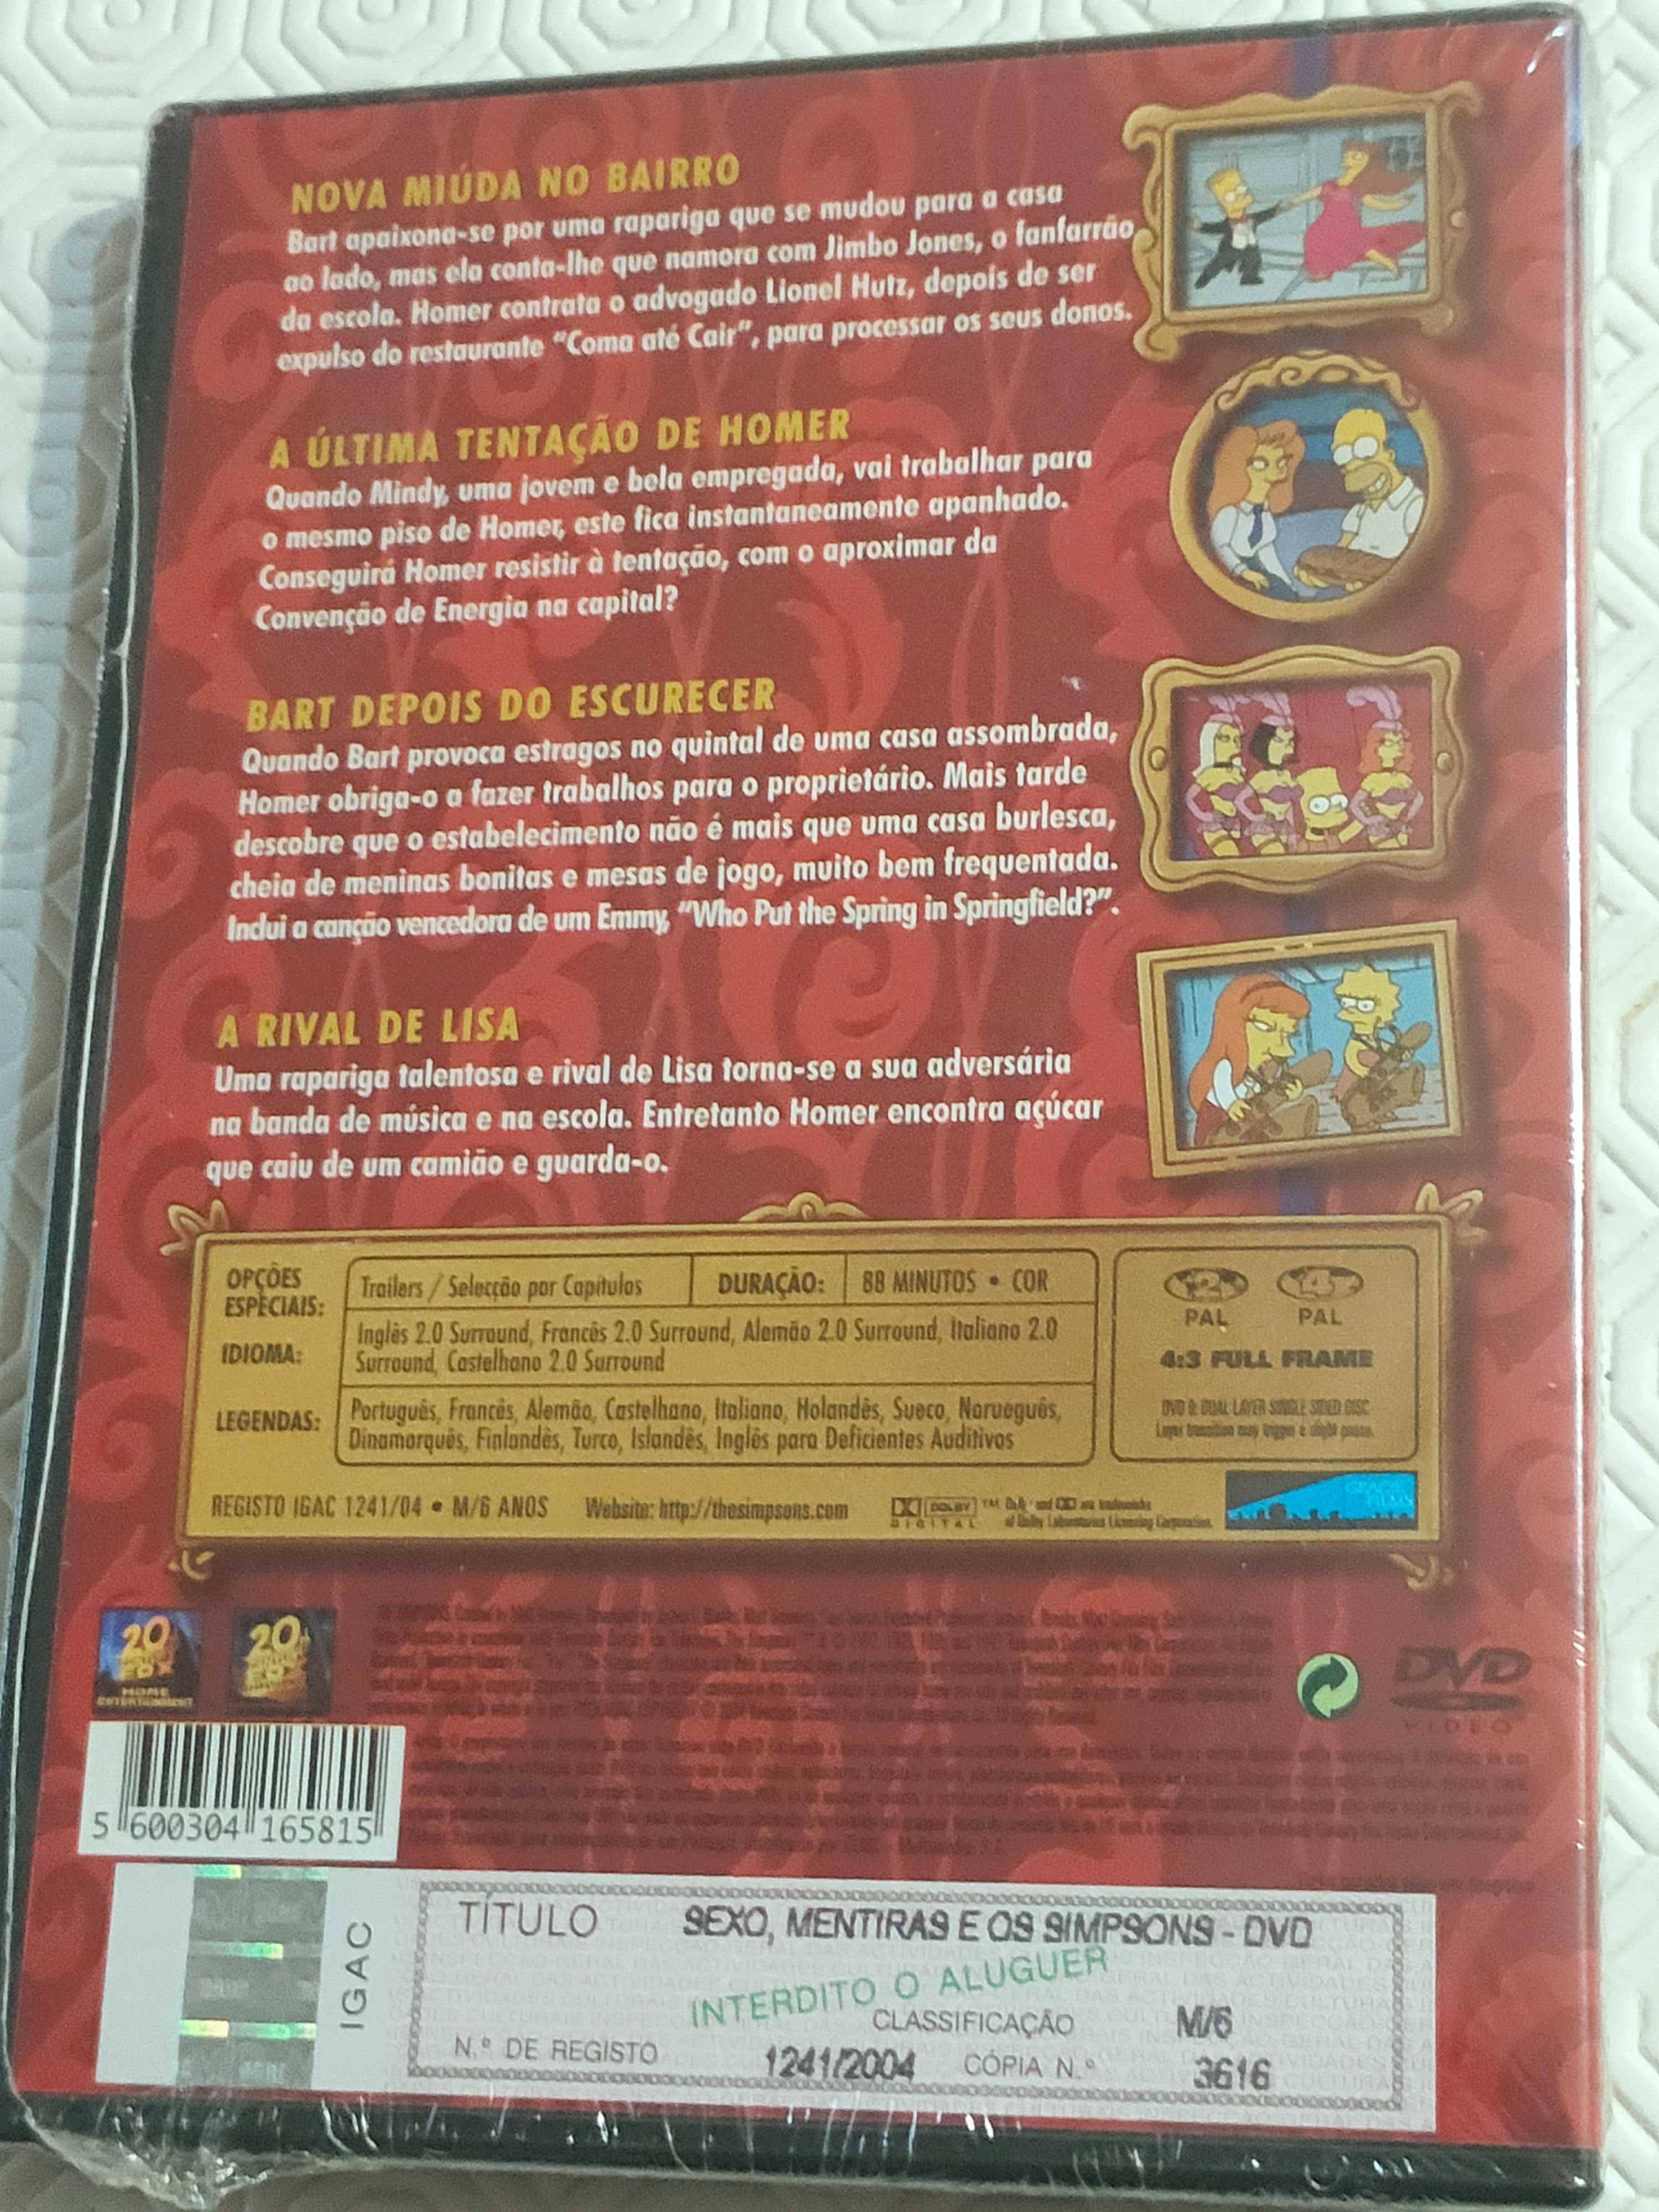 DVD Os Simpsons clássicos ainda fechado